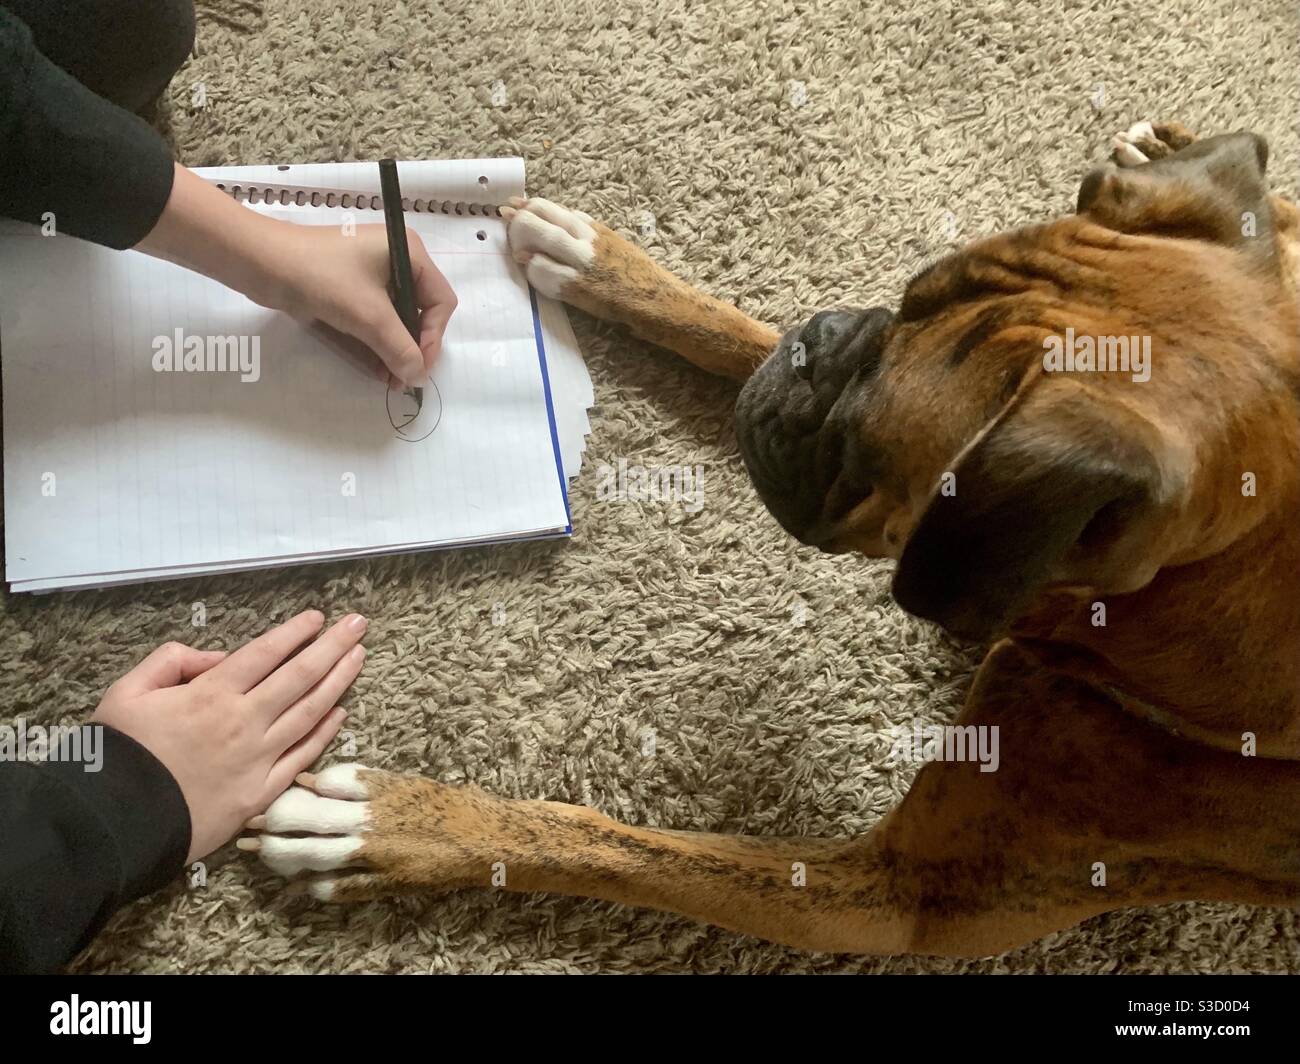 L'enfant et son chien de chiot assis ensemble créant des dessins dans un livre de notes avec un stylo et des pattes de chiot. Briller boxer chien et jeune garçon Banque D'Images